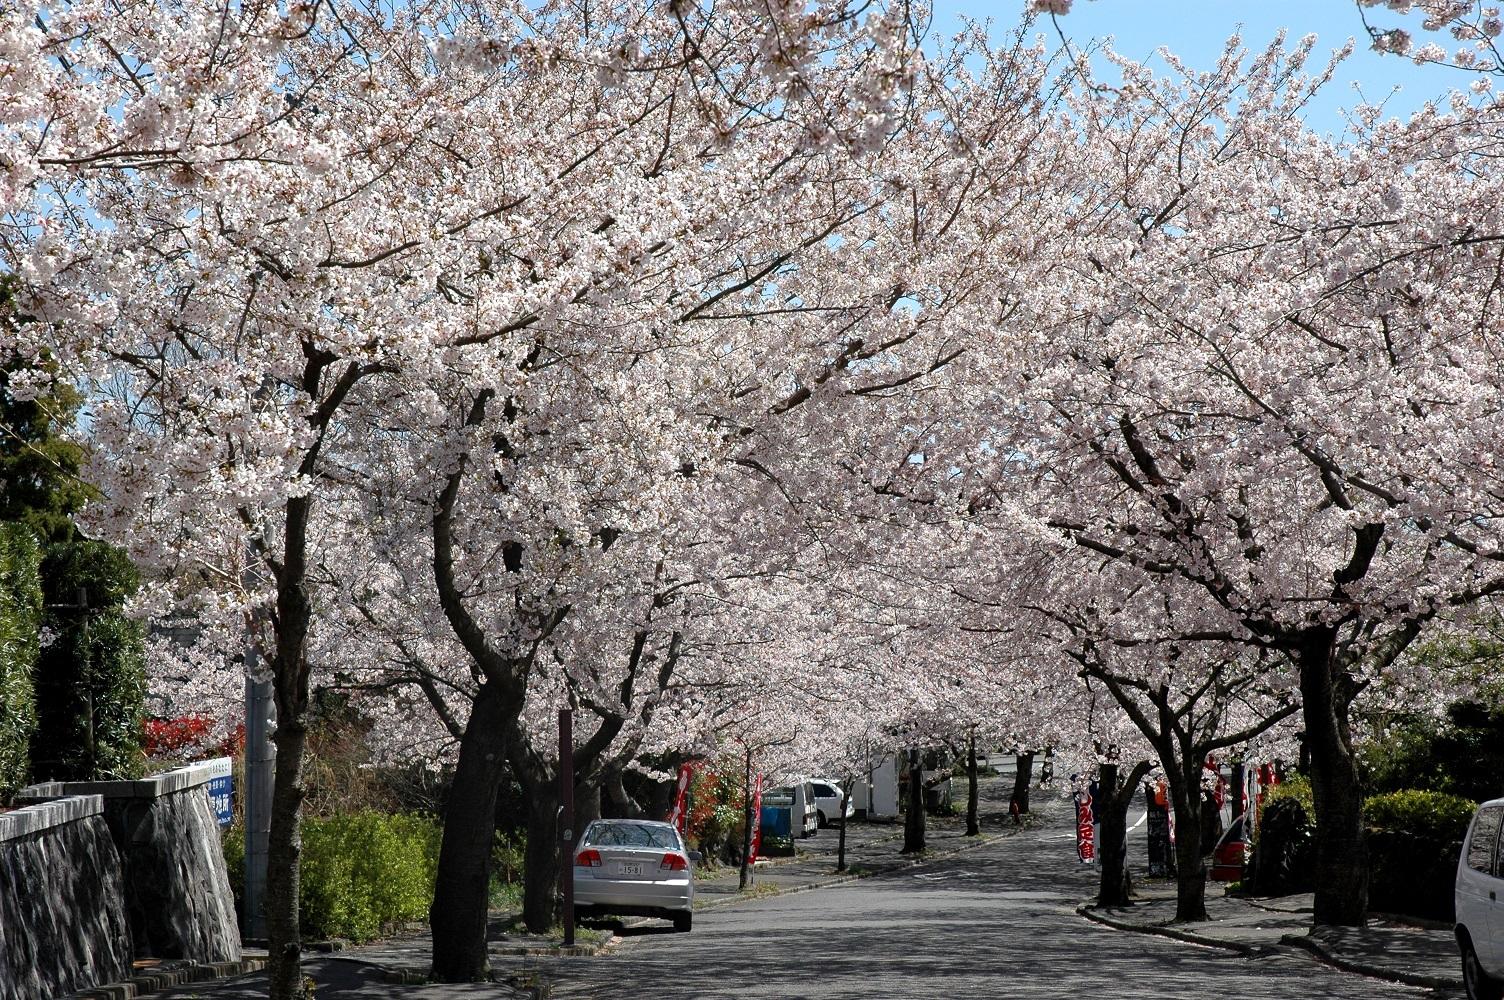 道路脇の満開の桜並木の写真